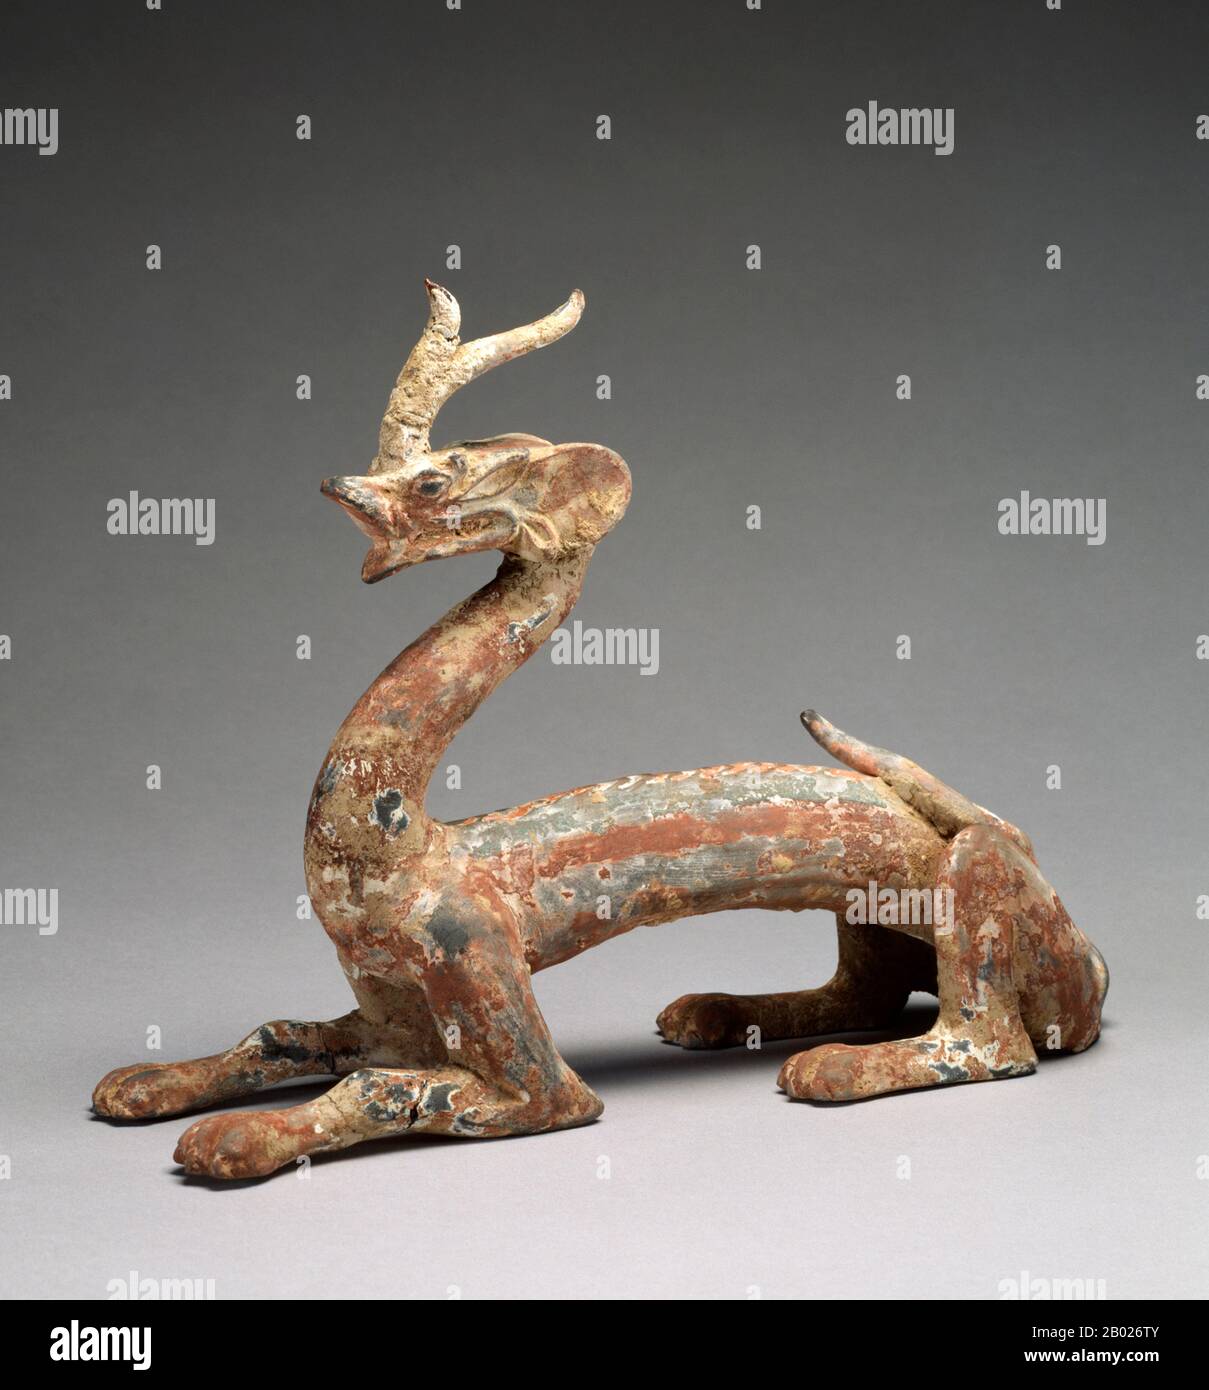 Les dragons chinois sont des créatures légendaires de la mythologie chinoise et du folklore. Dans l'art chinois, les dragons sont généralement représentés comme des créatures longues, à l'échelle, serpentine avec quatre jambes. Dans la terminologie yin et yang, un dragon est yang et complète un yin fenghuang ou 'Chinese phoenix'. Les dragons chinois symbolisent traditionnellement des puissances puissantes et favorables, en particulier le contrôle de l'eau, des précipitations, des ouragans et des inondations. Le dragon est aussi un symbole de puissance, de force et de bonne chance. Avec cela, l'empereur de Chine utilisait habituellement le dragon comme symbole de sa puissance et de sa force impériales. Symboles de dragons Banque D'Images